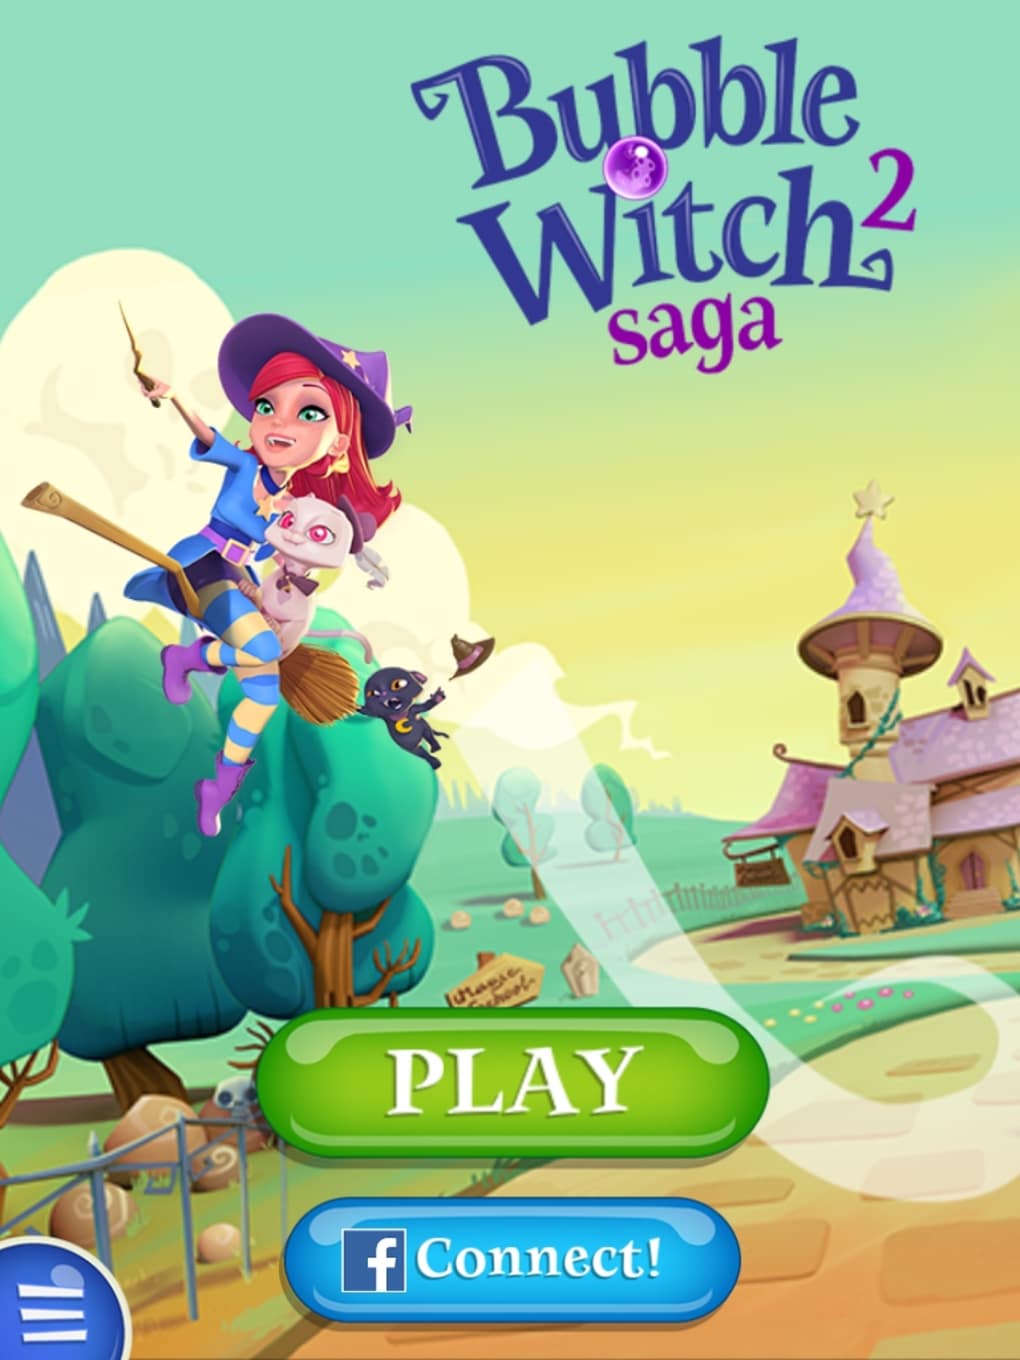 7 dicas para jogar Bubble Witch 2 Saga com mais estratégia - Softonic